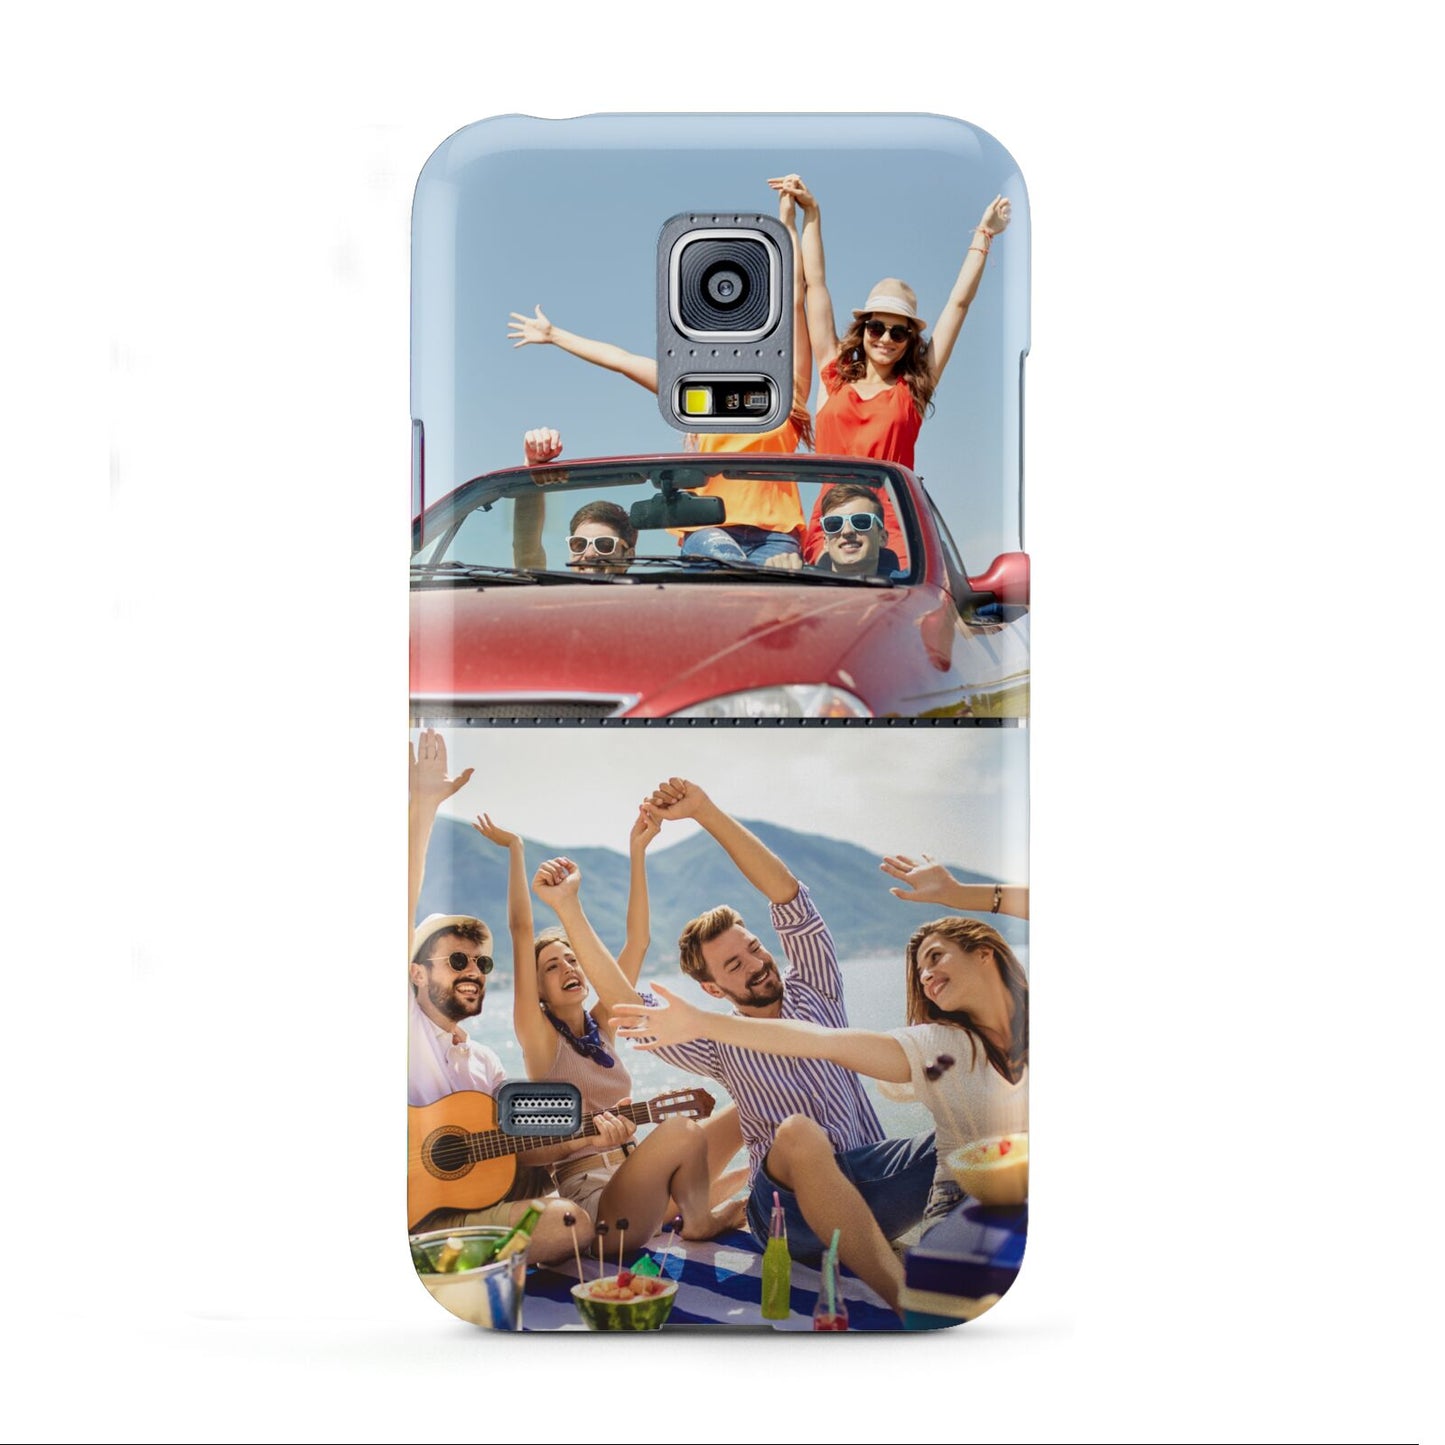 Two Photo Samsung Galaxy S5 Mini Case